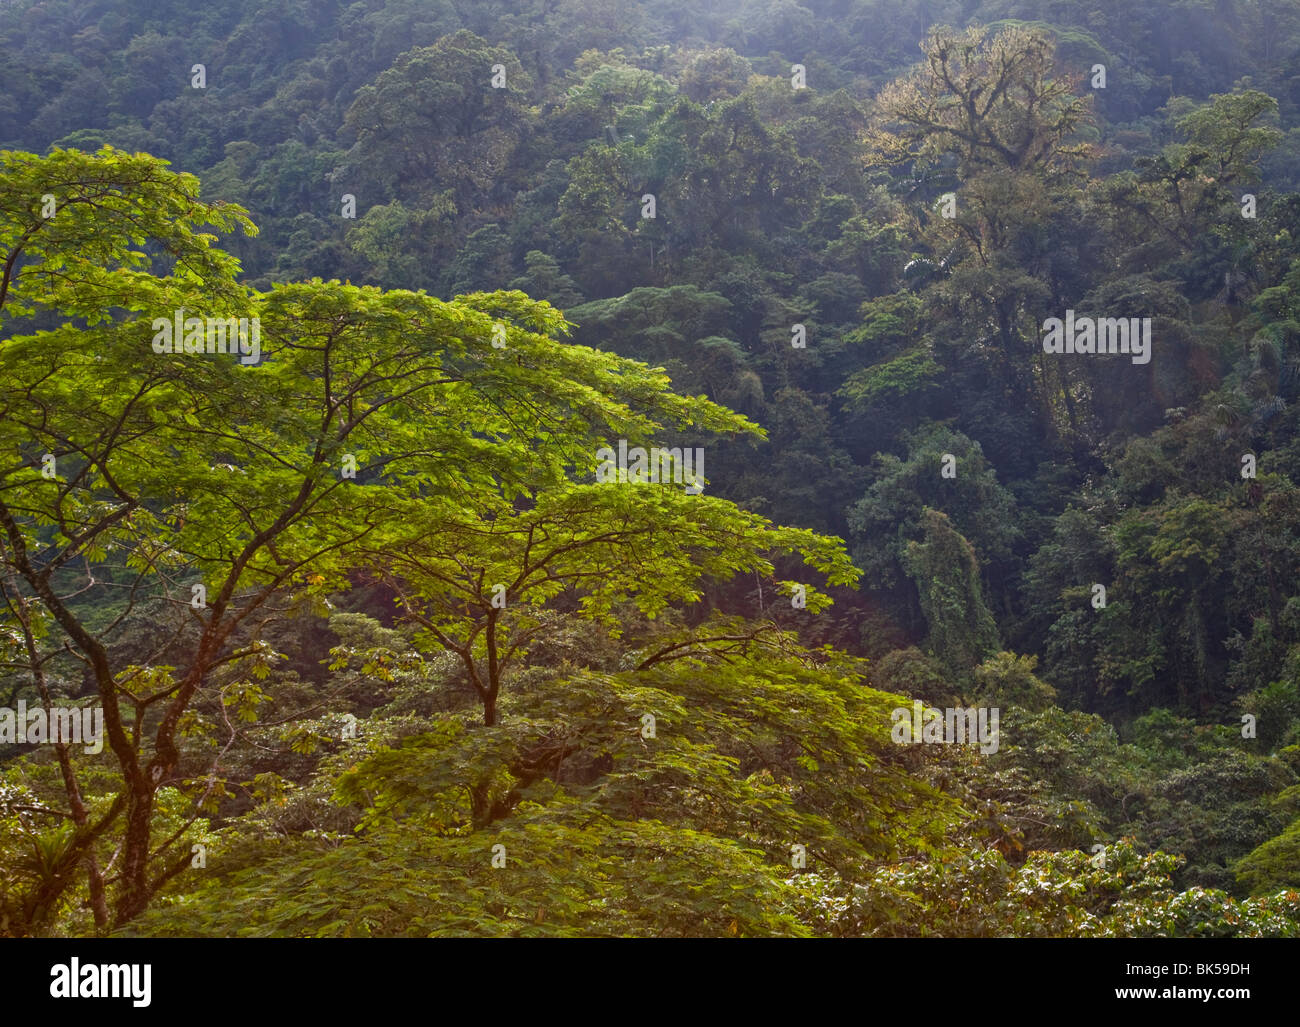 Neotropical rainforest sfumature di colori verdi nella foresta pluviale tropicale e sulla valle del fiume Costa Rica Foto Stock